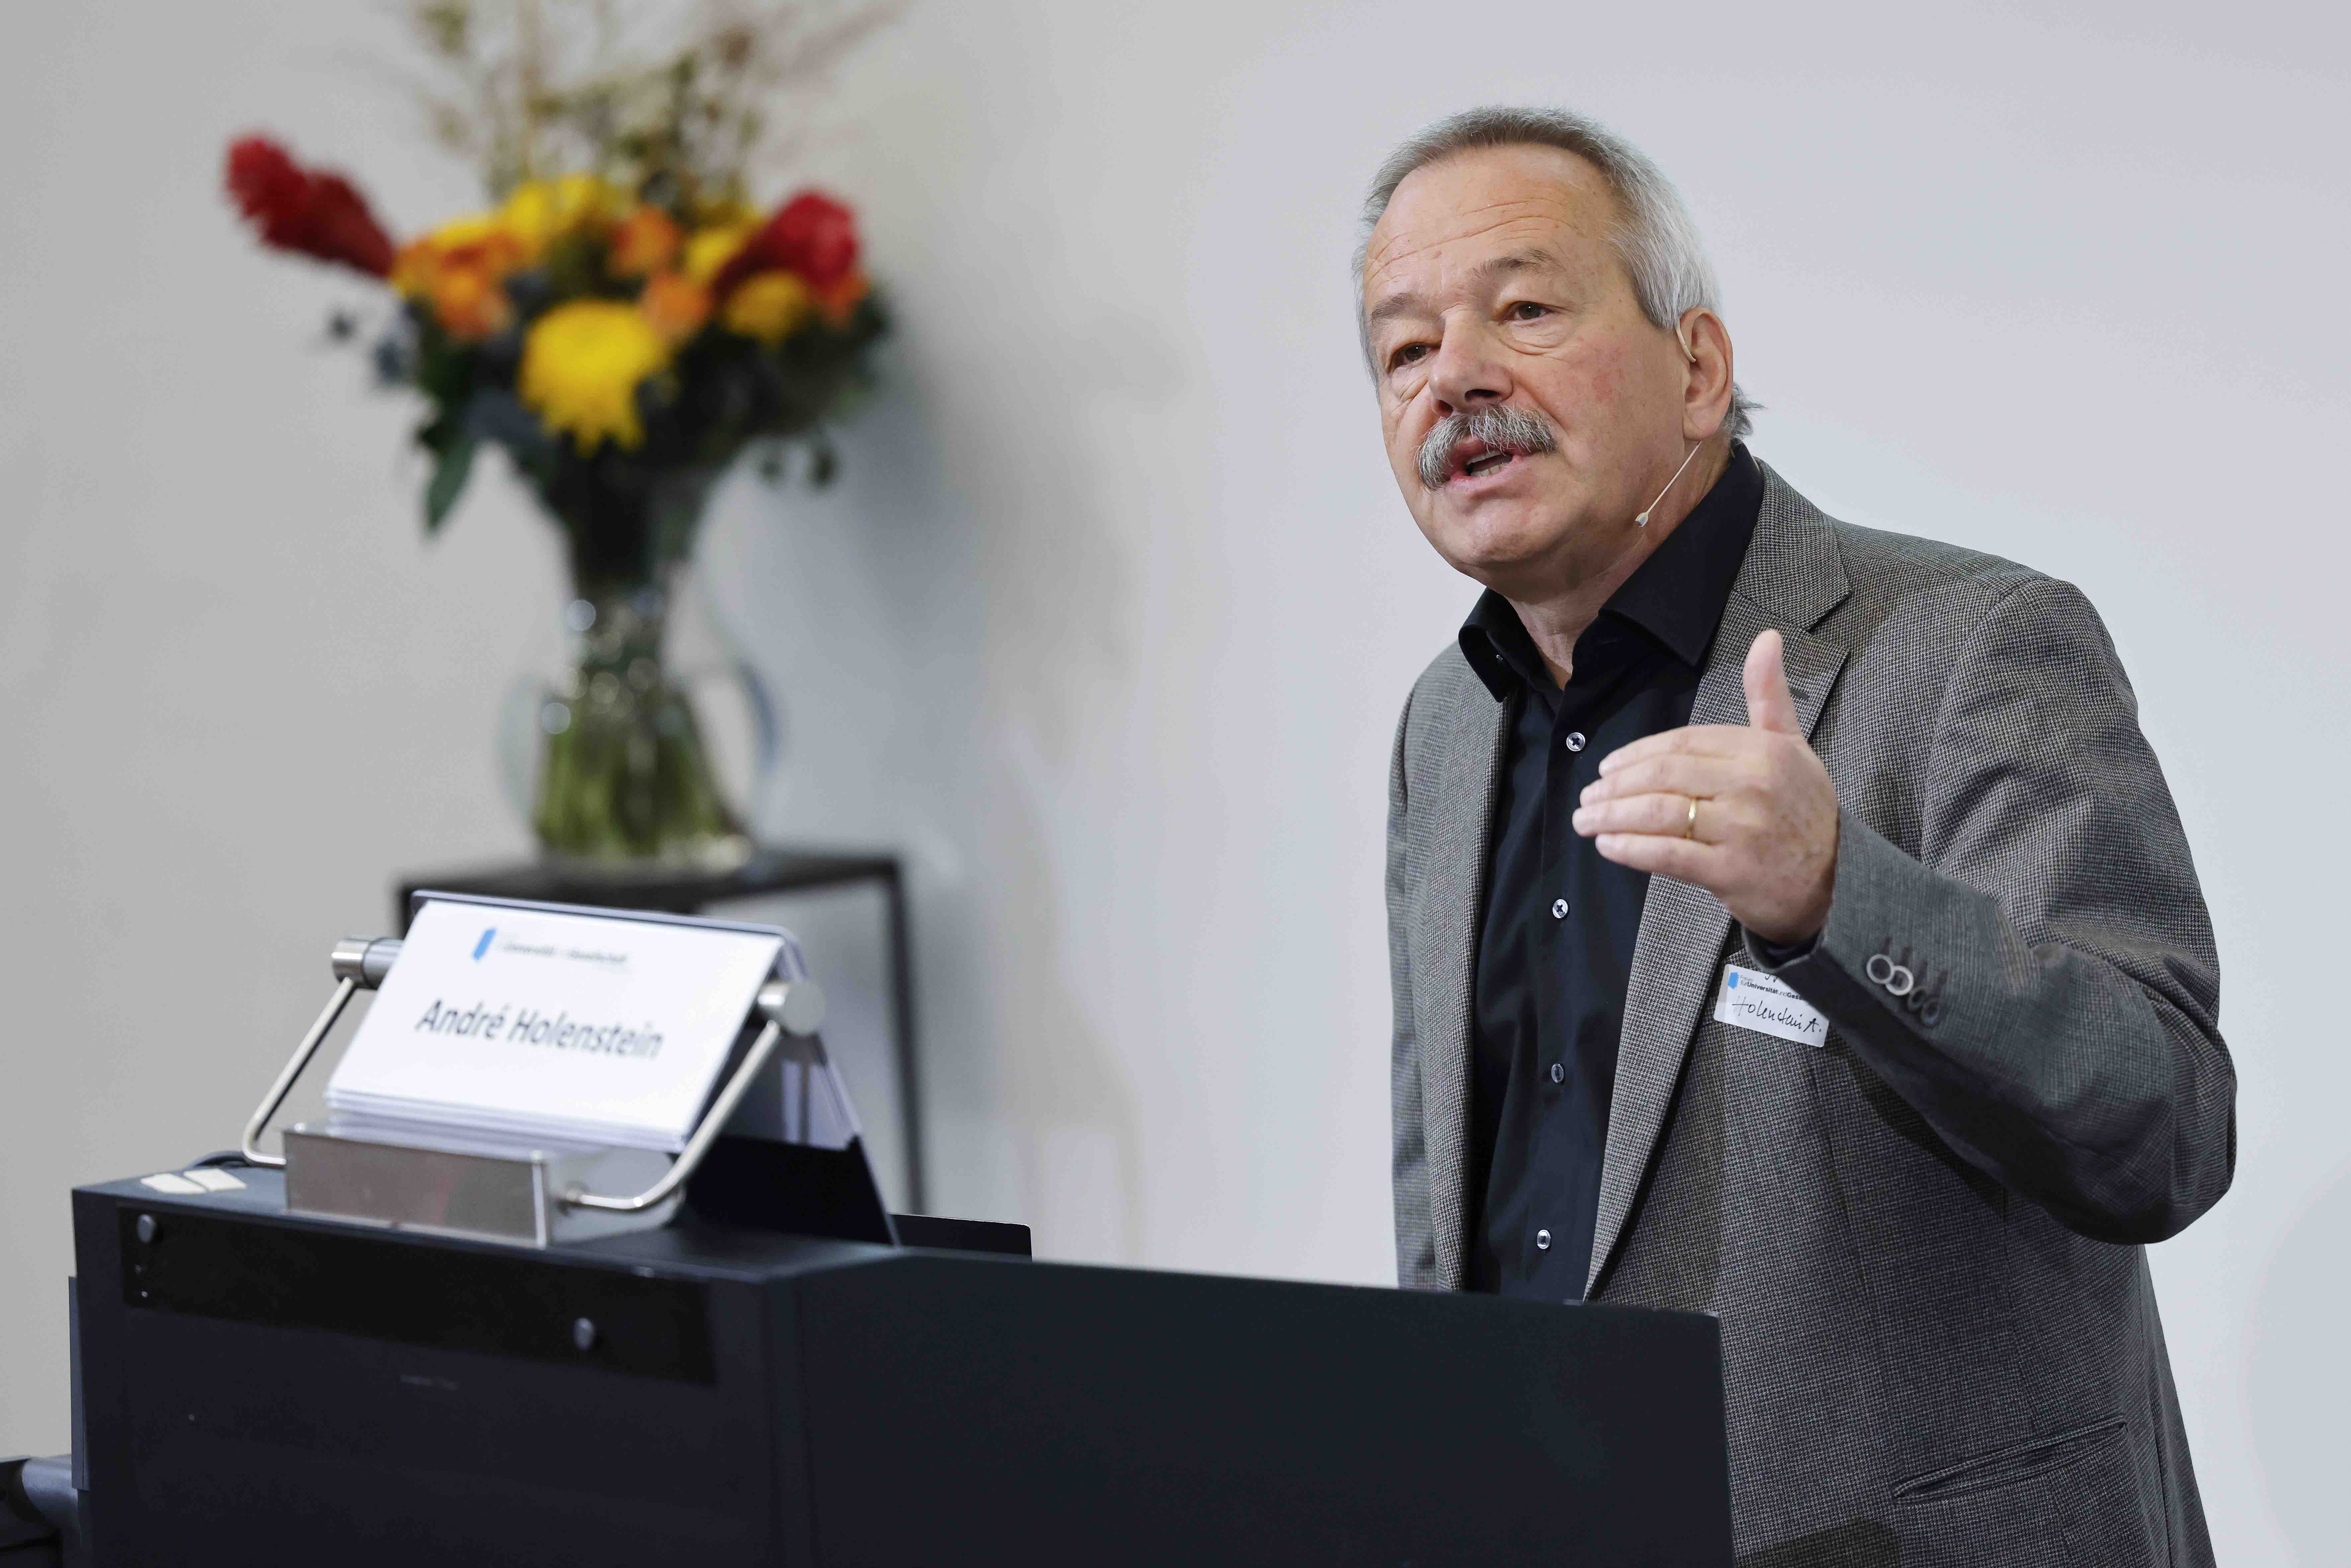 Der Referent André Holenstein steht hinter einem Rednerpult und gestikuliert mit der linken Hand. Auf der rechten Seite ist im Hintergrund ein rot-gelber Blumenstrauss